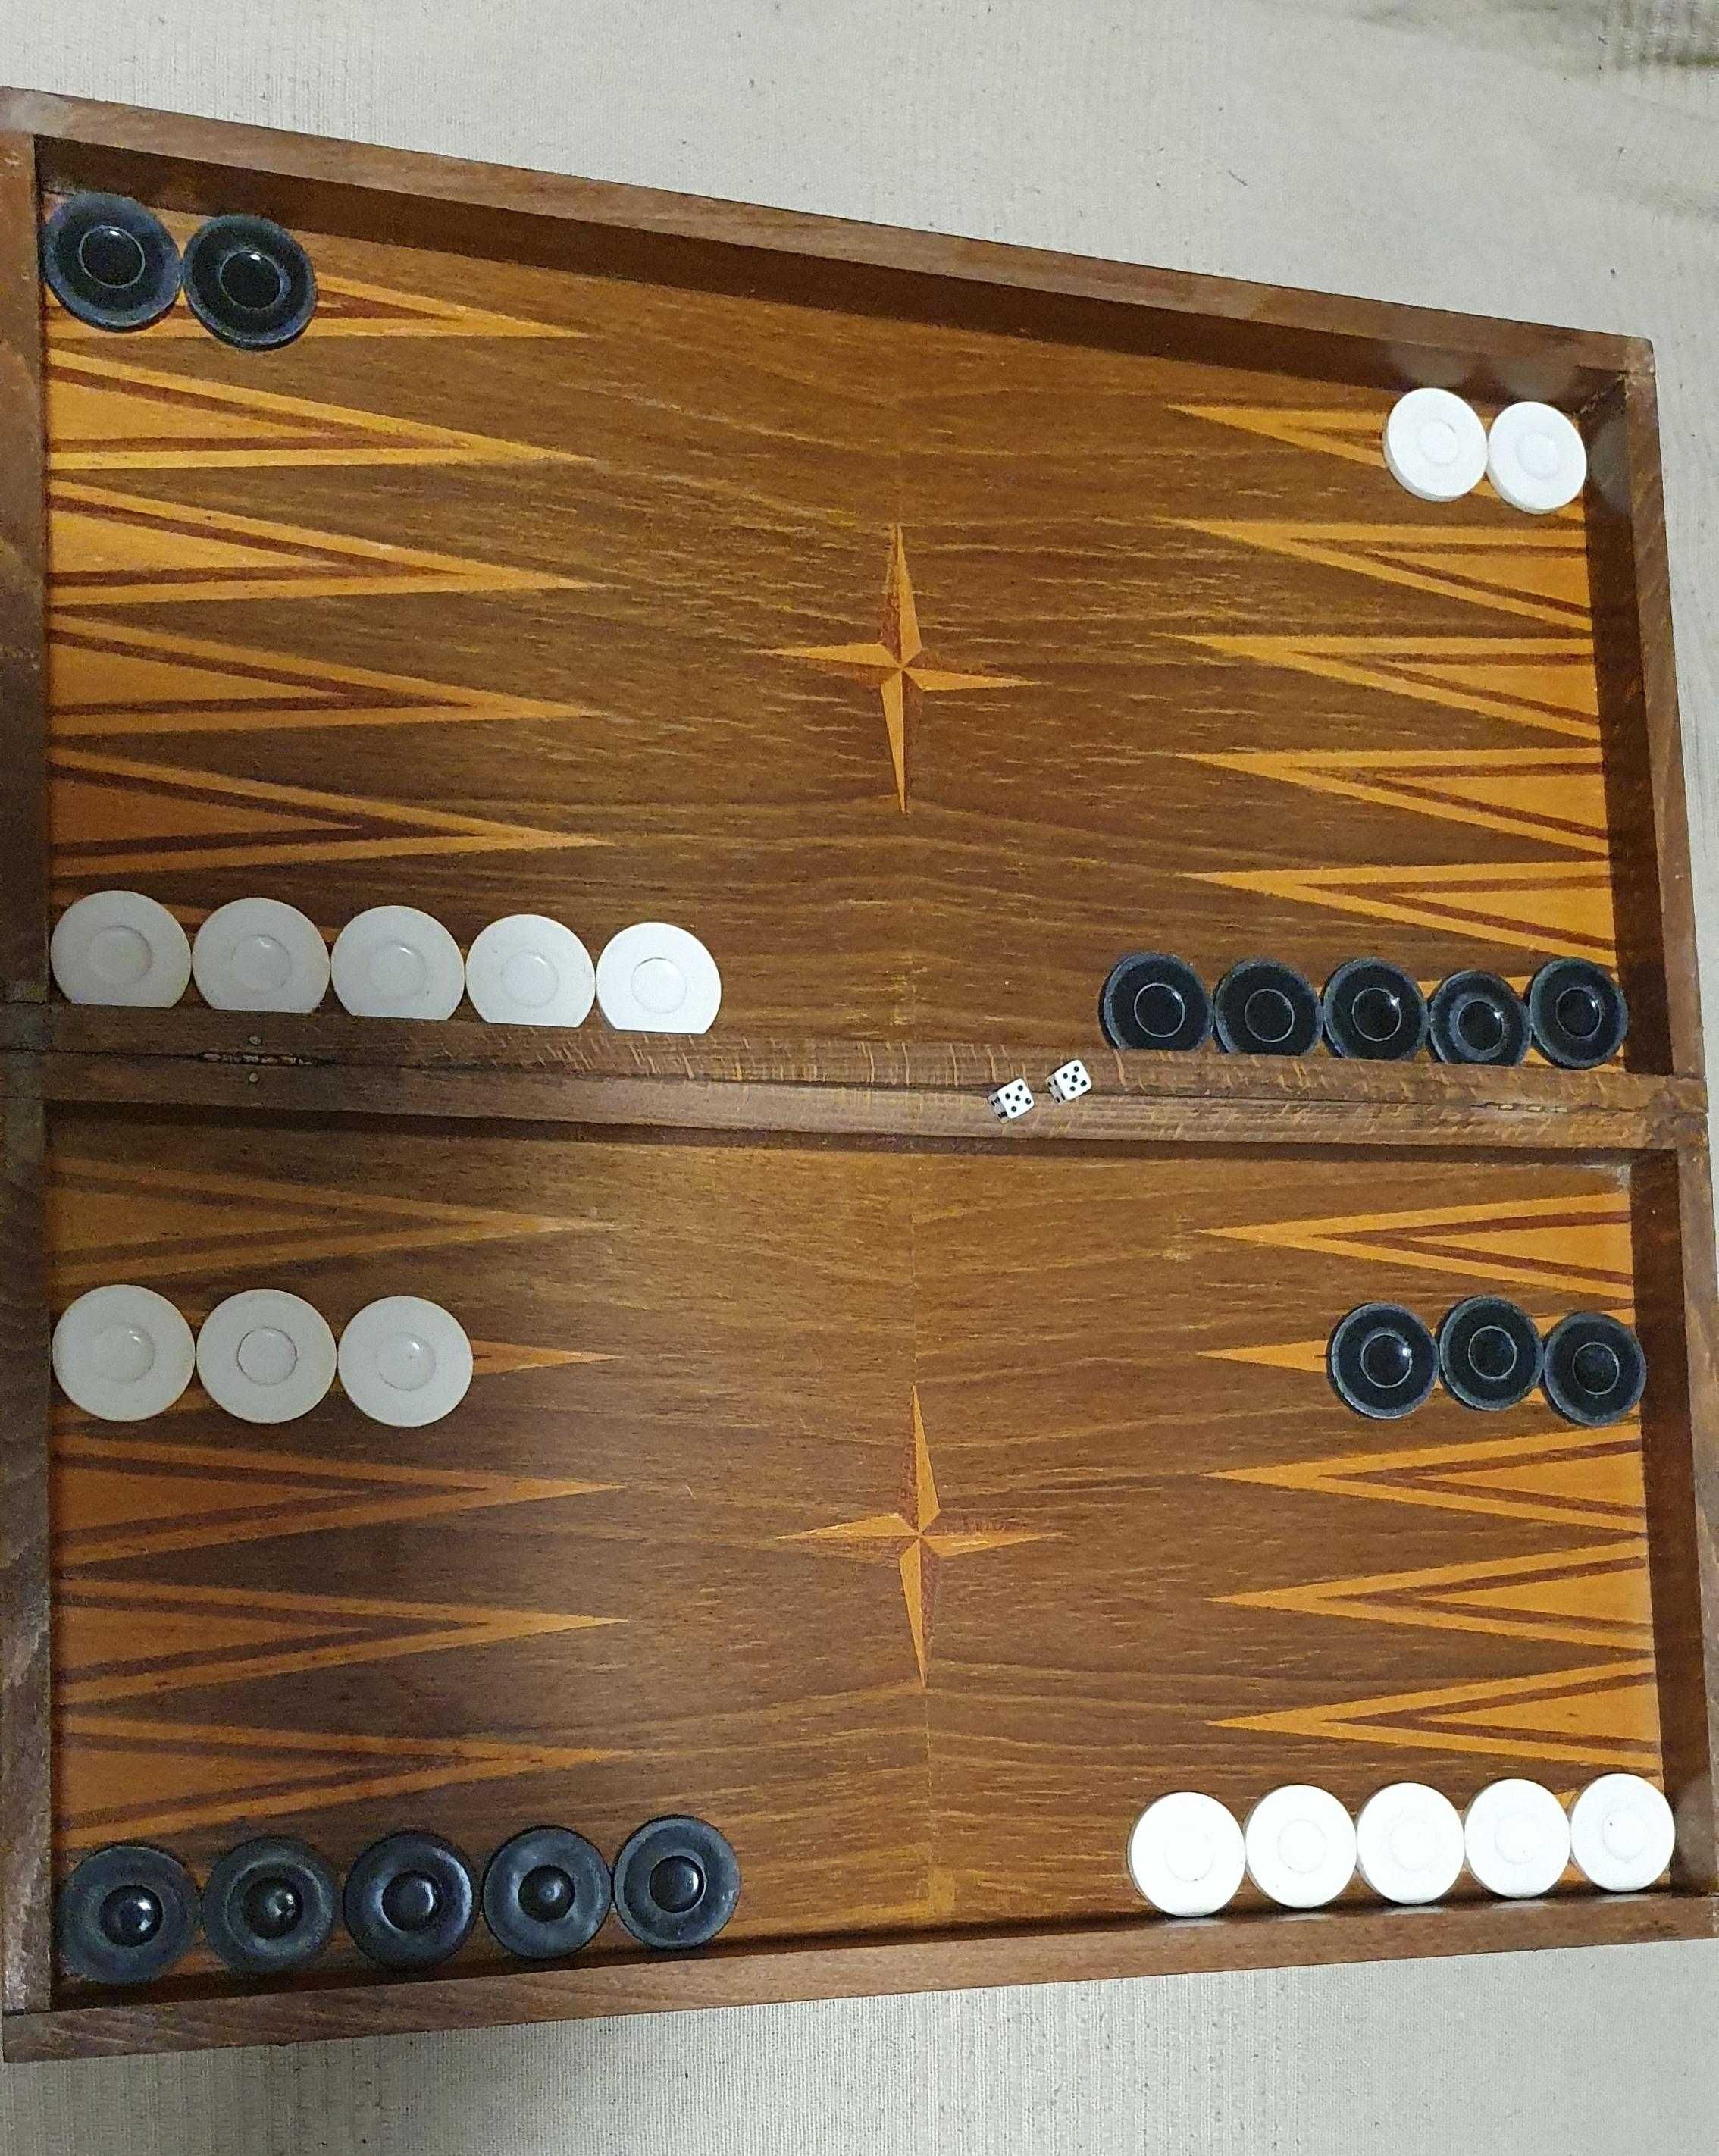 Оригинална стара класическа табла 48/48 см + шах. Пълен комплект.